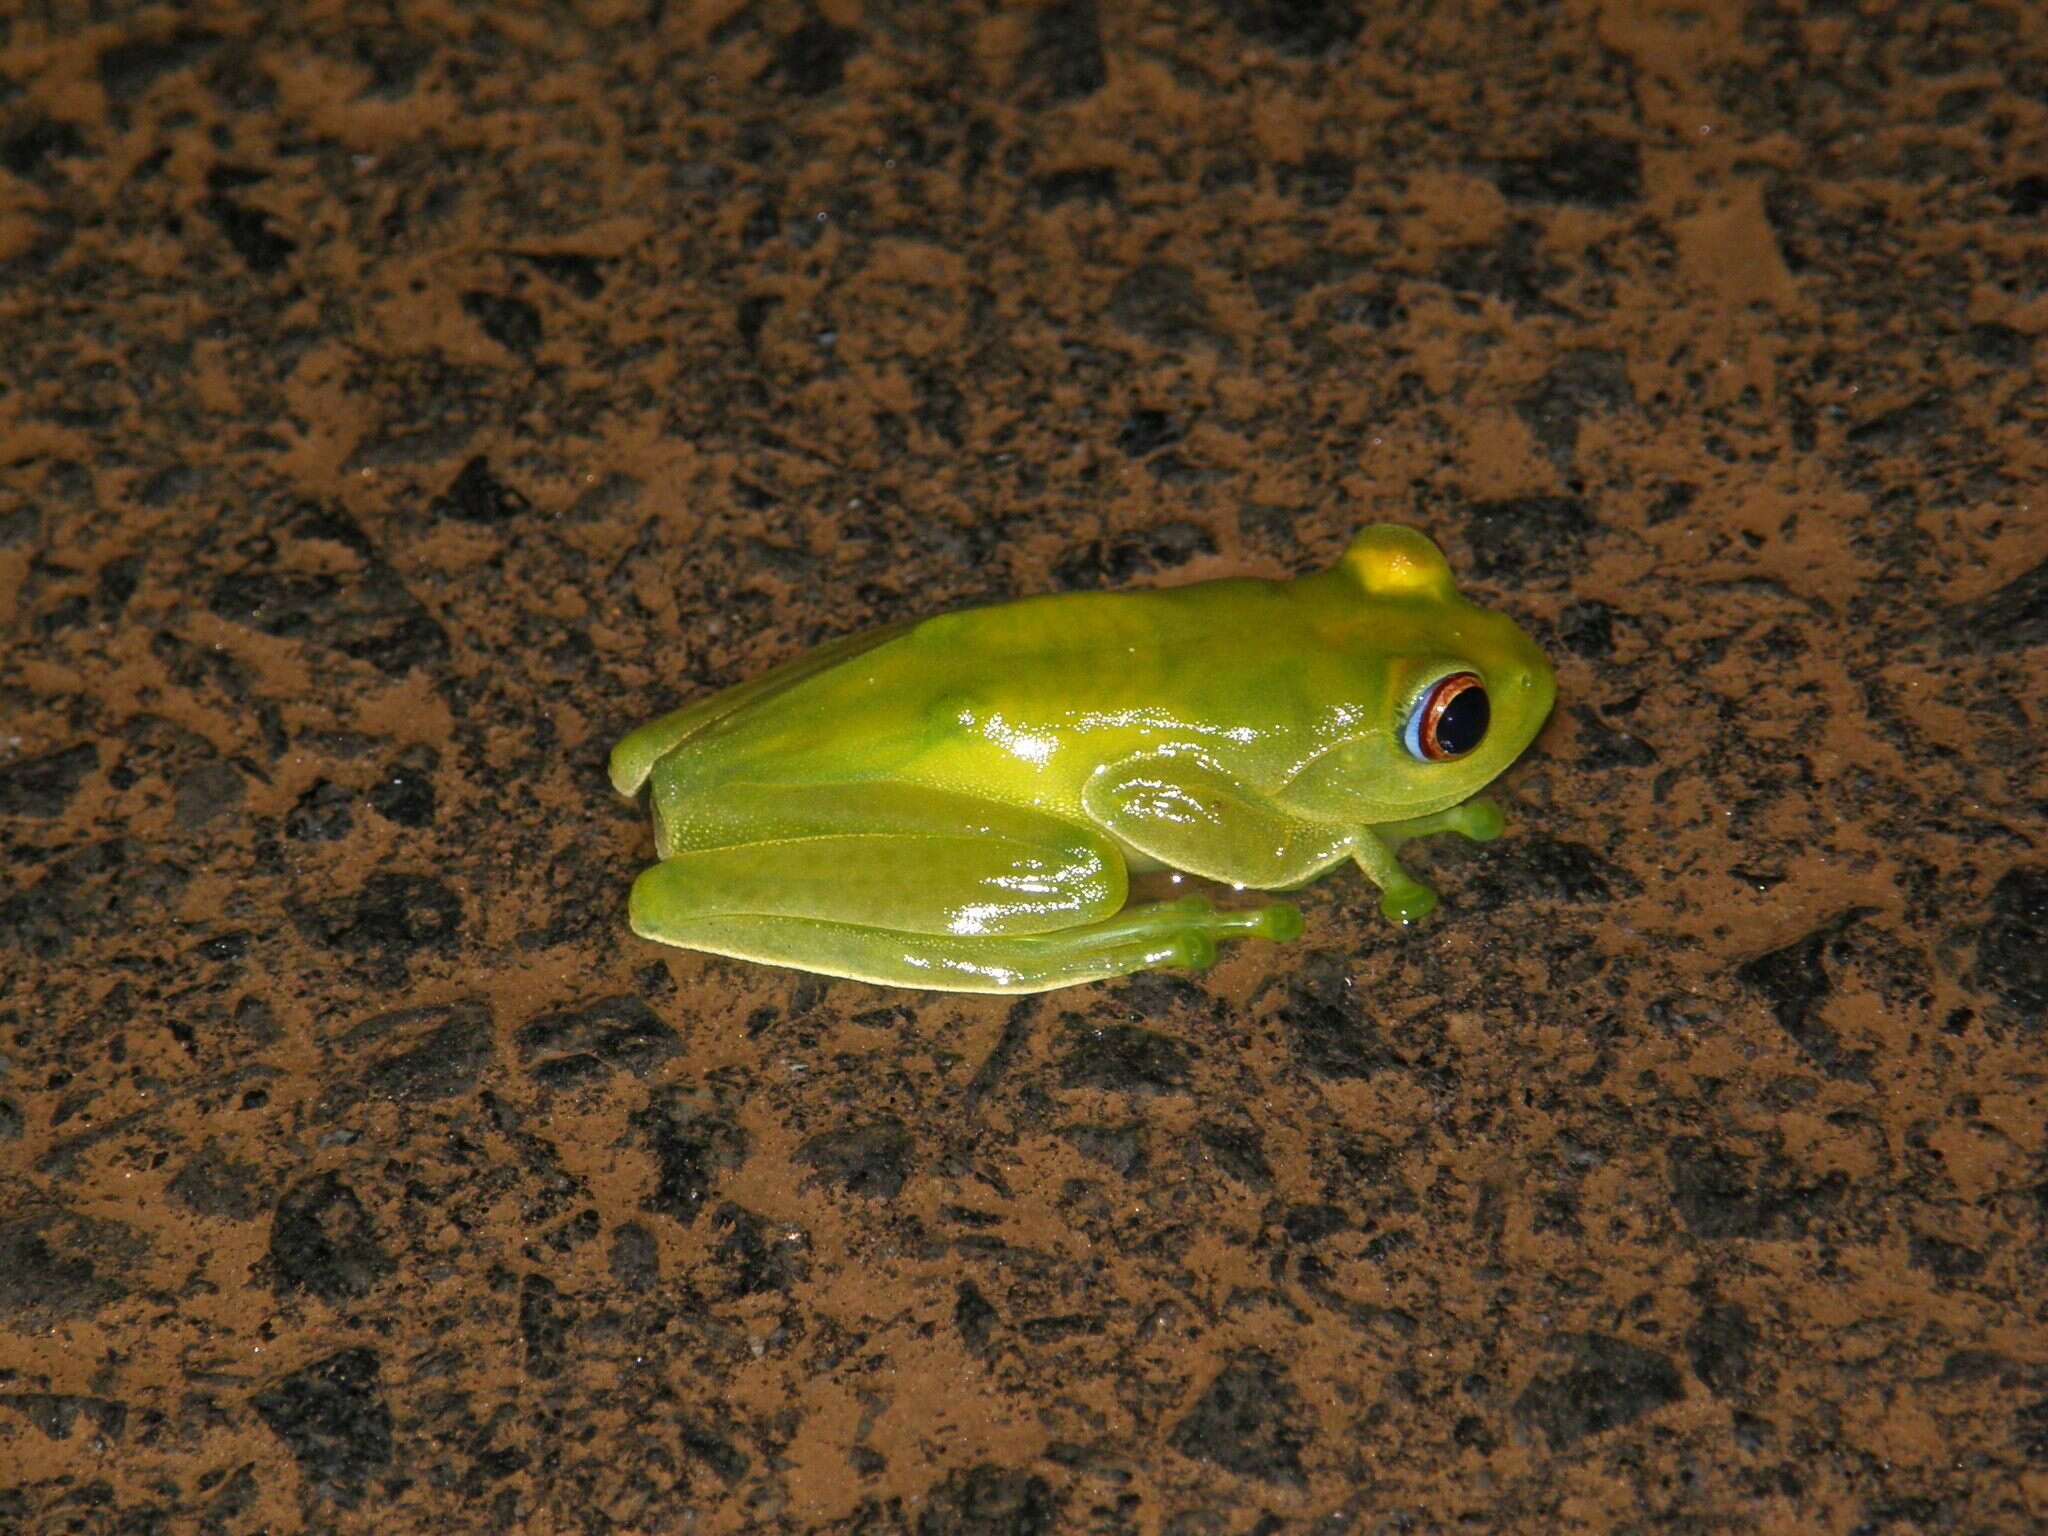 Image of Ankafana Bright-eyed Frog